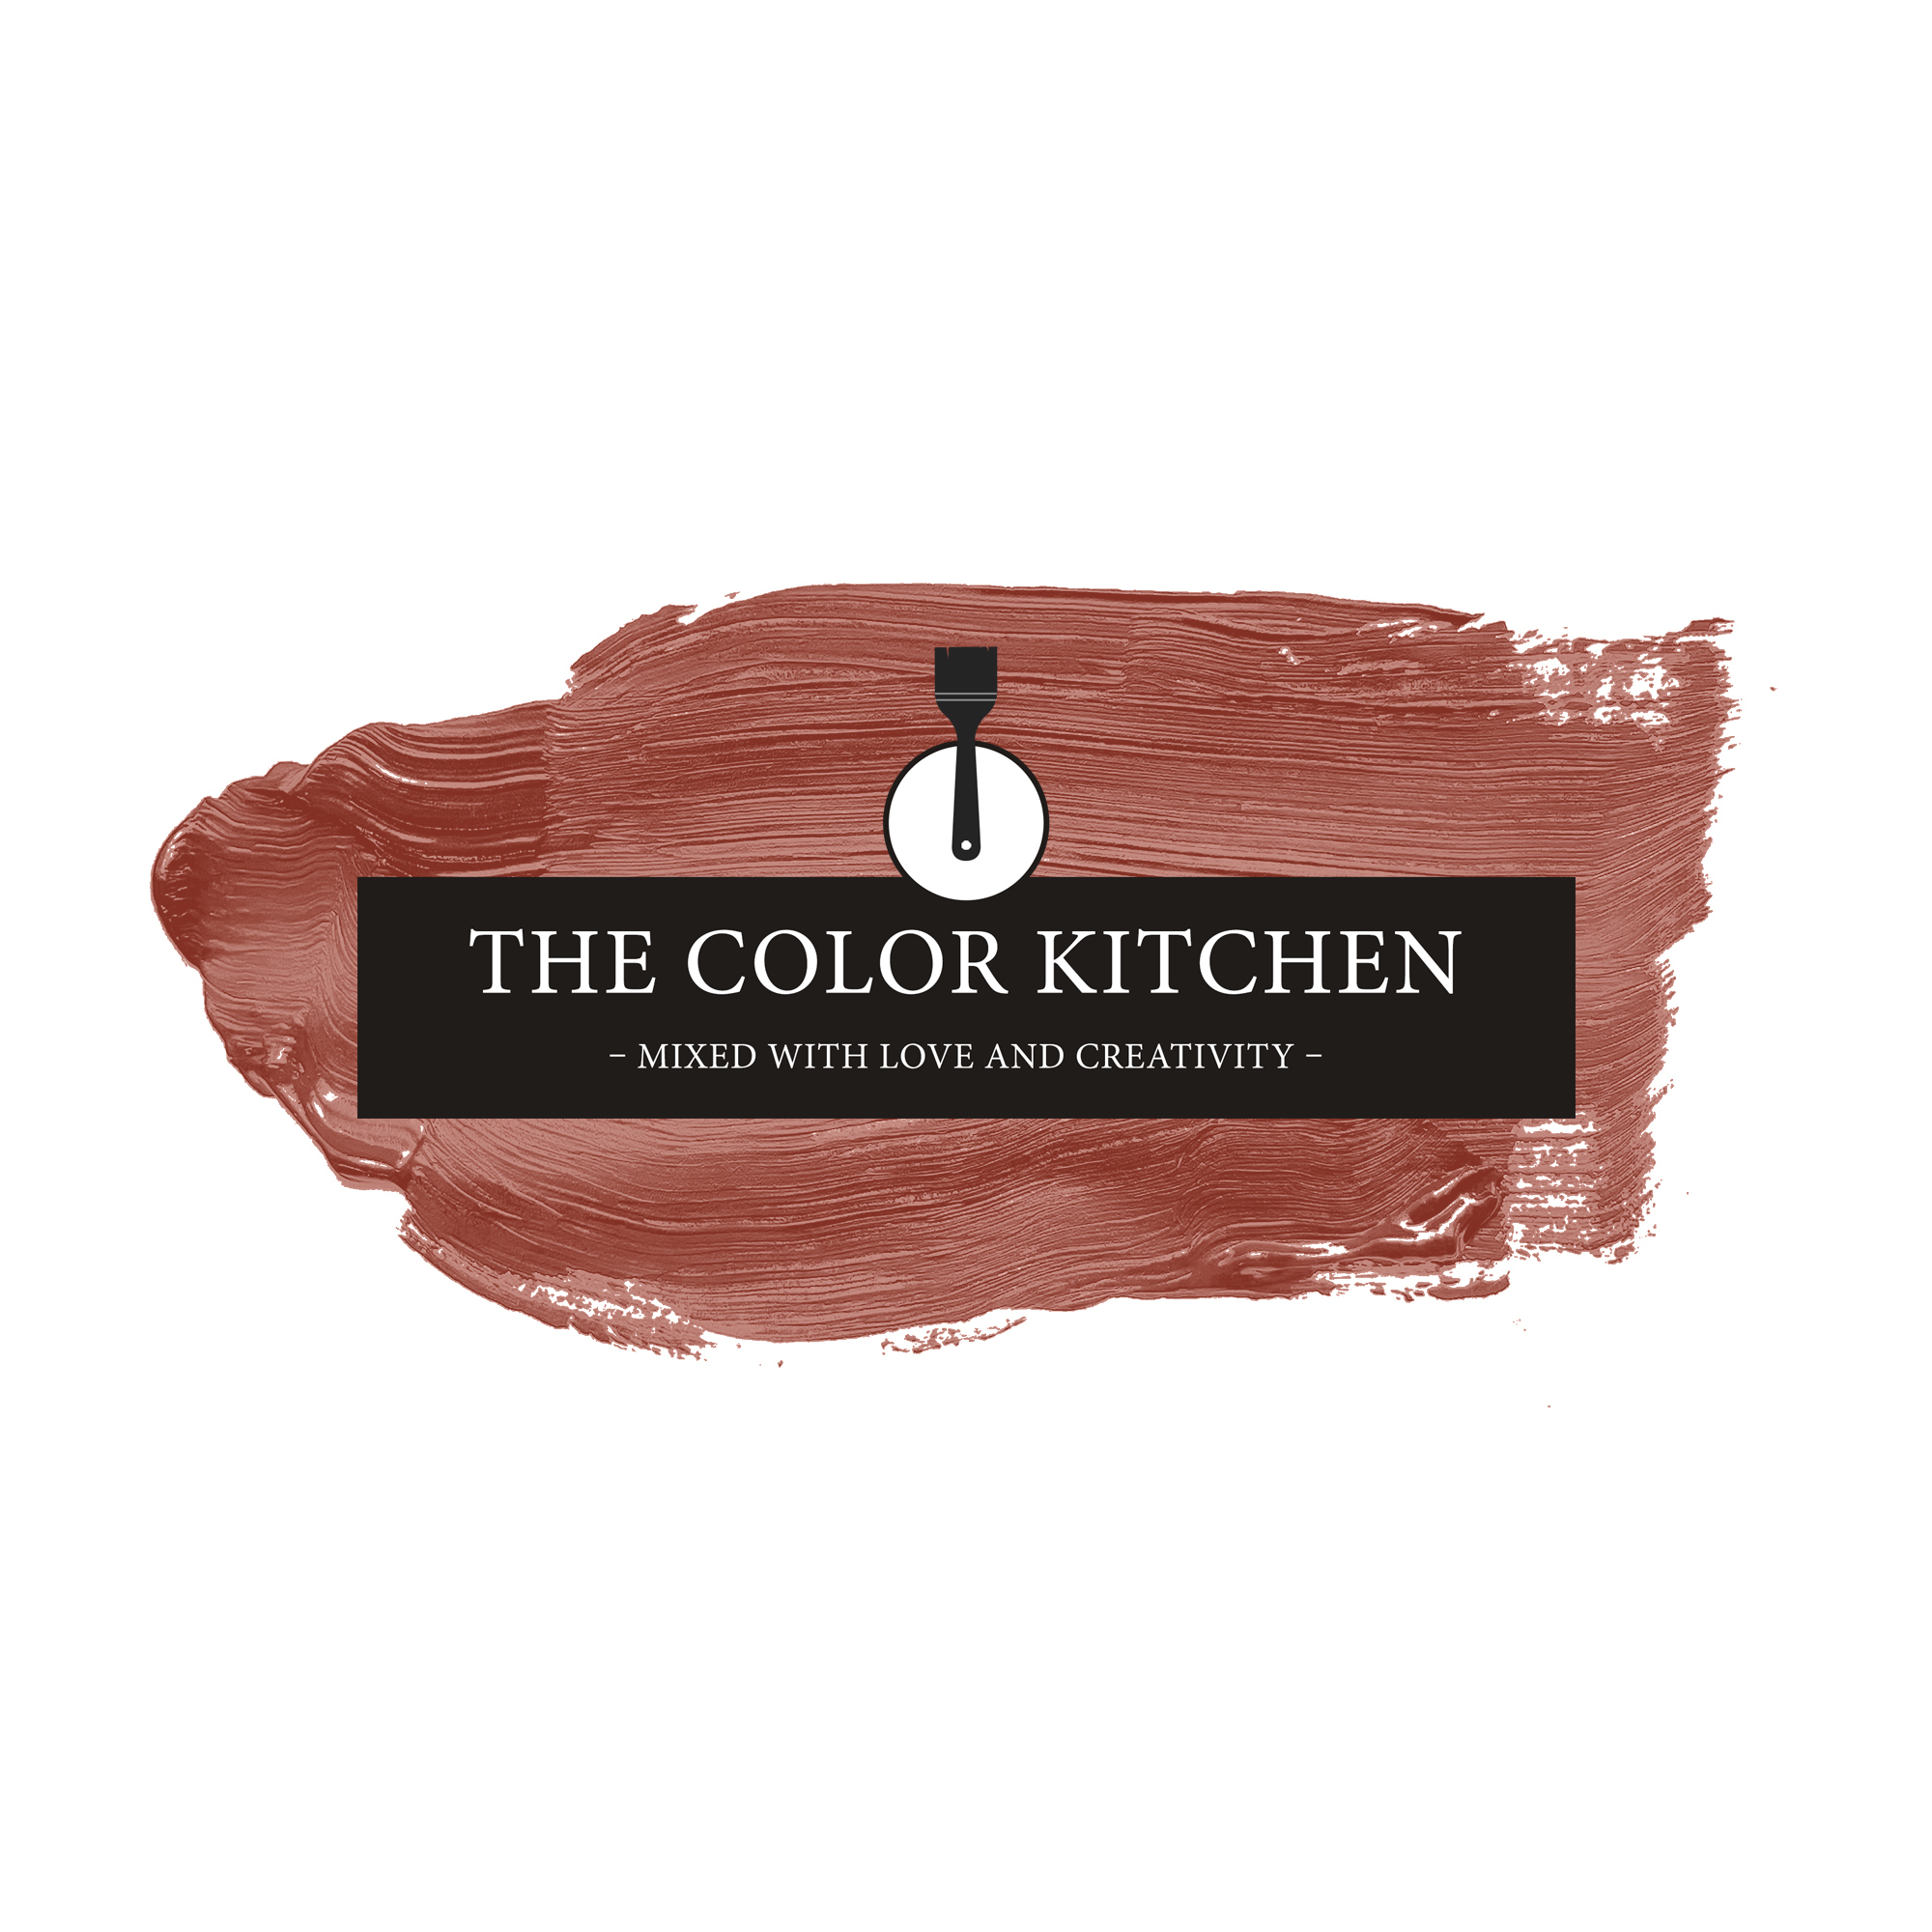 The Color Kitchen Simple Safron 5 l